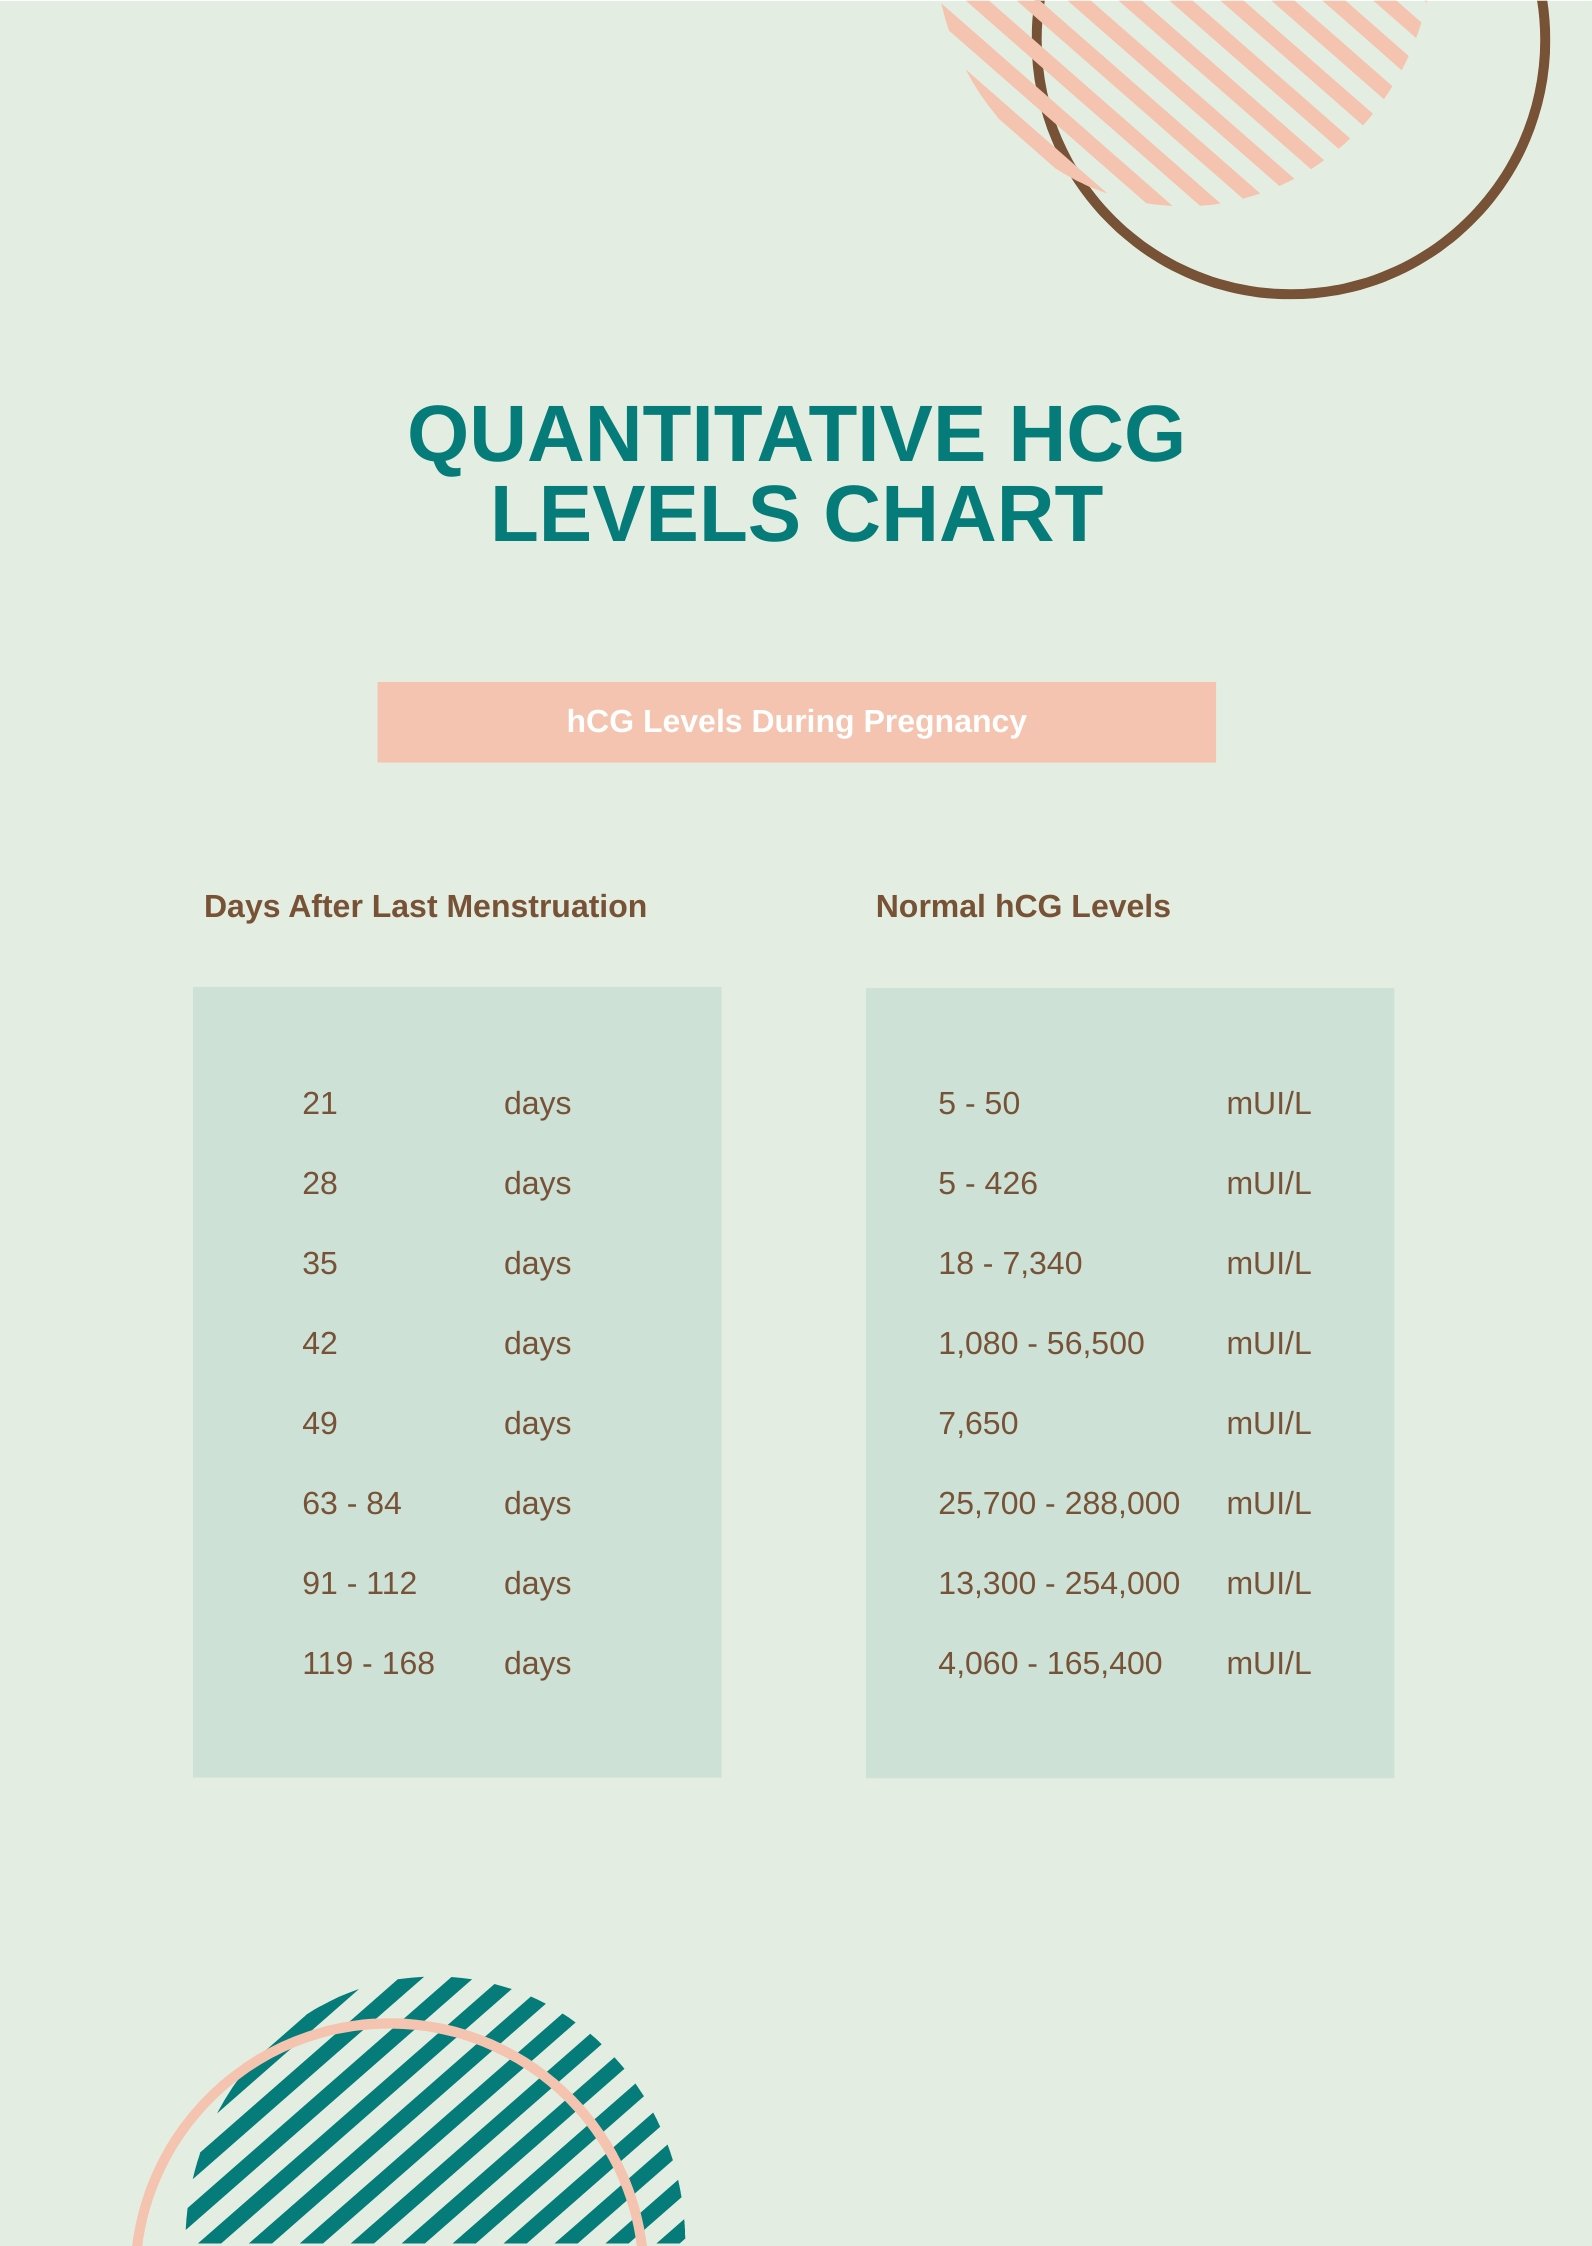 Quantitative HCG Levels Chart